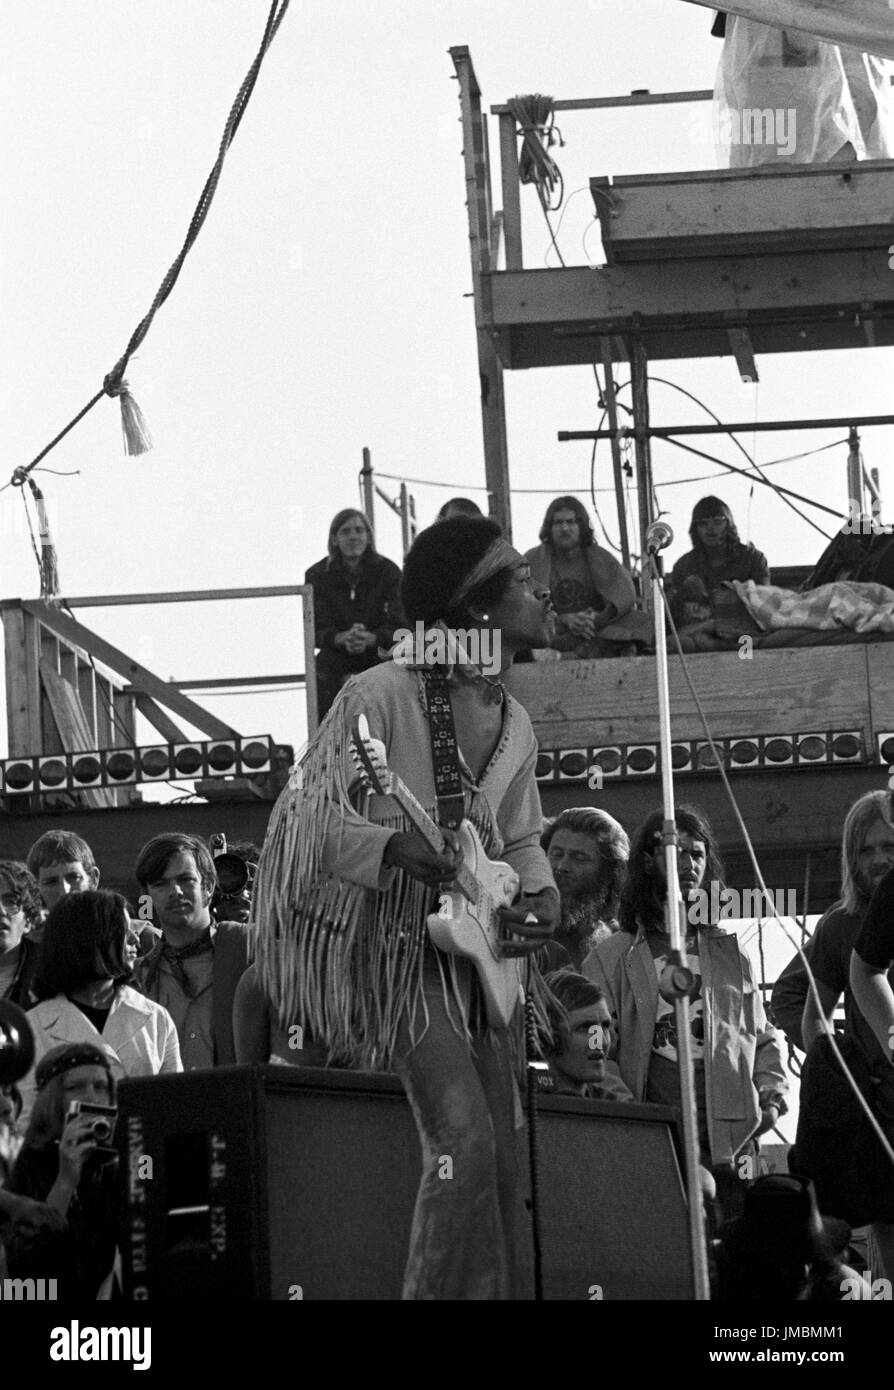 Jimi Hendrix Durchführung von seinem legendären 2 Stunden Auftritt beim Woodstock Music & Arts Festival auf Sam Yasgurs Luzerne Feld in Sullivan County in Bethal, New York am 18. August 1969 statt. Hendrix, betonte er in der Nähe des Festivals und wurde geplant, um Mitternacht erscheinen aber aufgrund von Verzögerungen nicht die Bühne bis 09:00 Montag Morgen. Die meisten der Masse für zu Hause bis dahin verlassen hatte und war von eine satte 500.000 auf mickrige 80.000 geschrumpft.  ** HÖHERE Preise möglich ** Aufruf zum Preis verhandeln ** nie zuvor veröffentlichten Fotos ** © Peter Tarnoff / MediaPunch Stockfoto